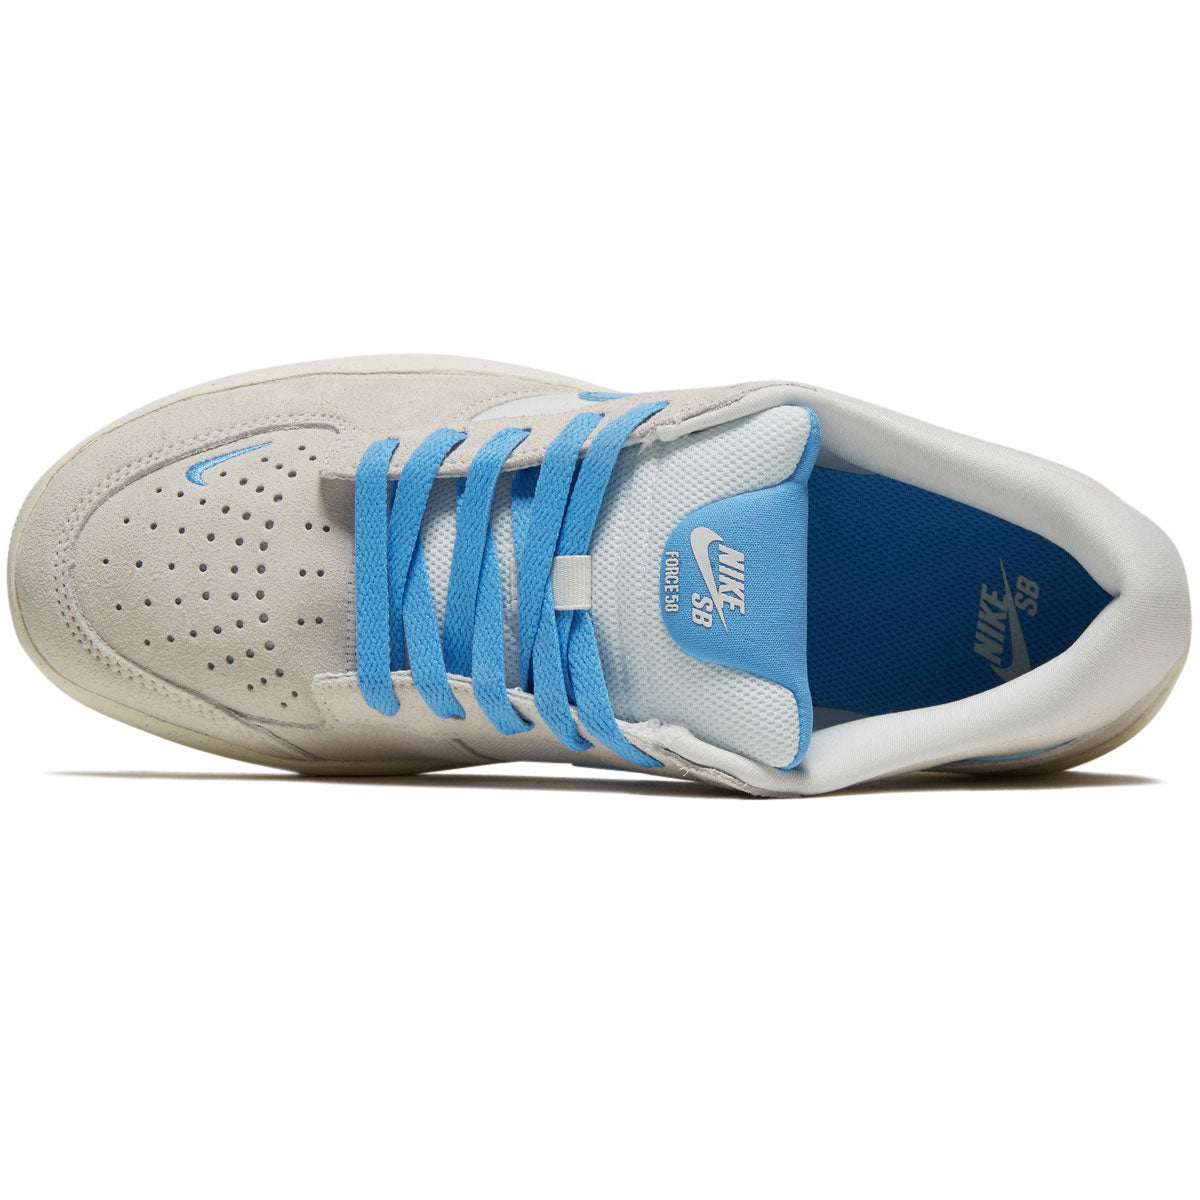 Nike SB Force 58 Shoes - Phantom/University Blue/Summit White image 3